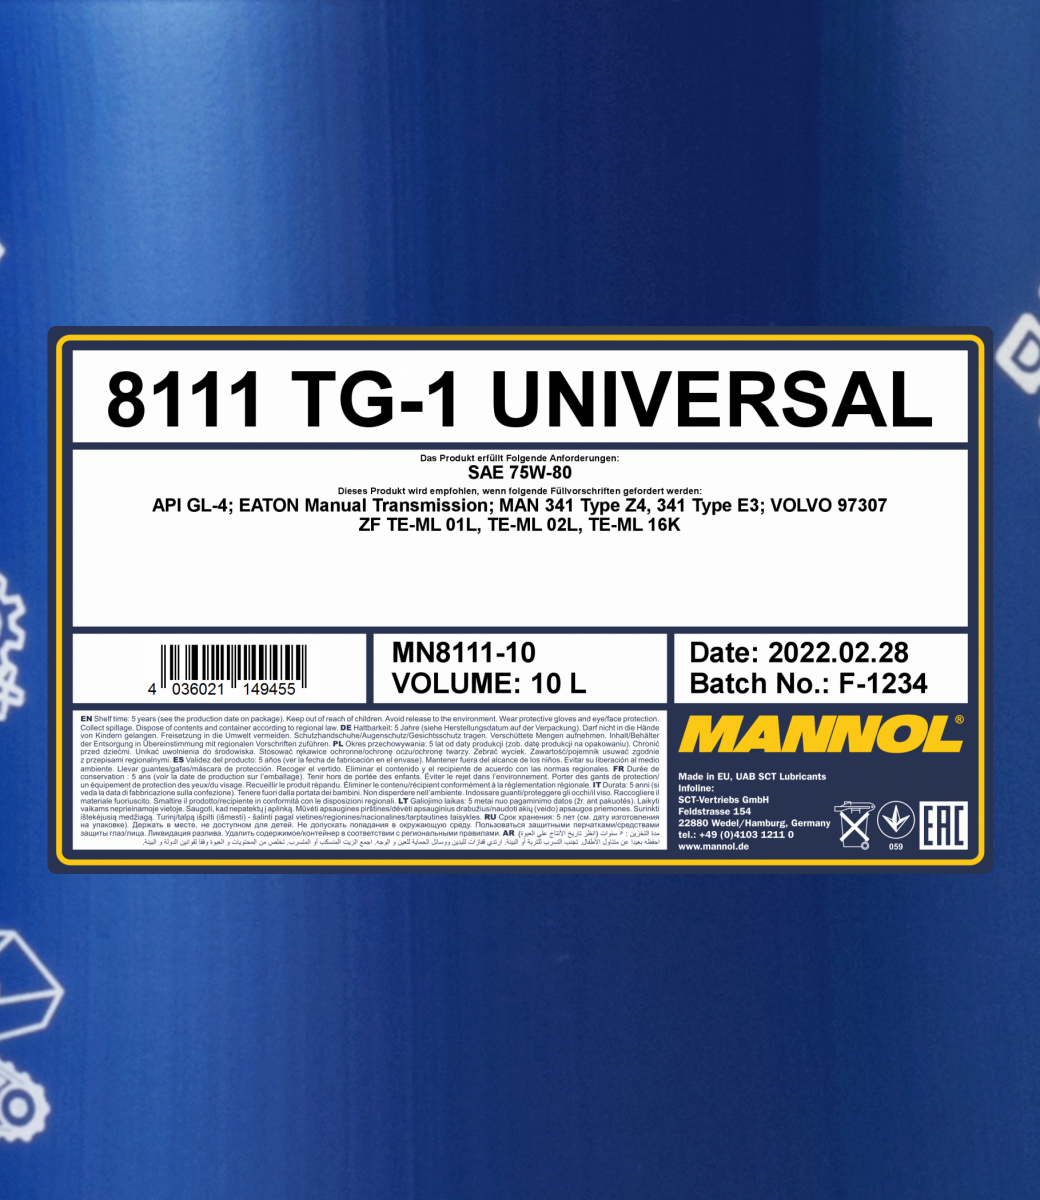 Mannol - 8111 TG-1 Universal 75W-80 Manual Transmission Fluid